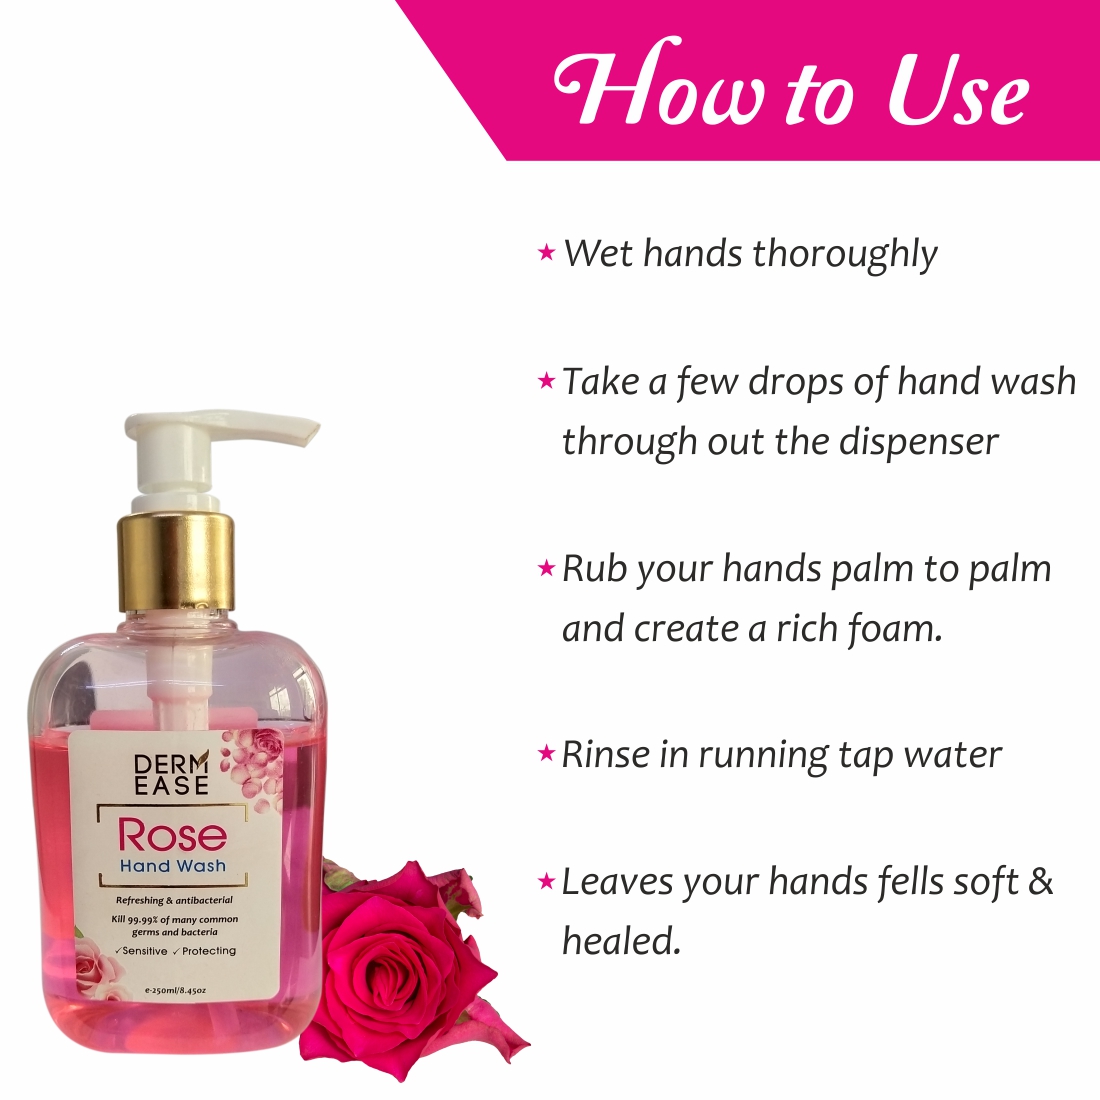 DERM EASE Rose Hand Wash